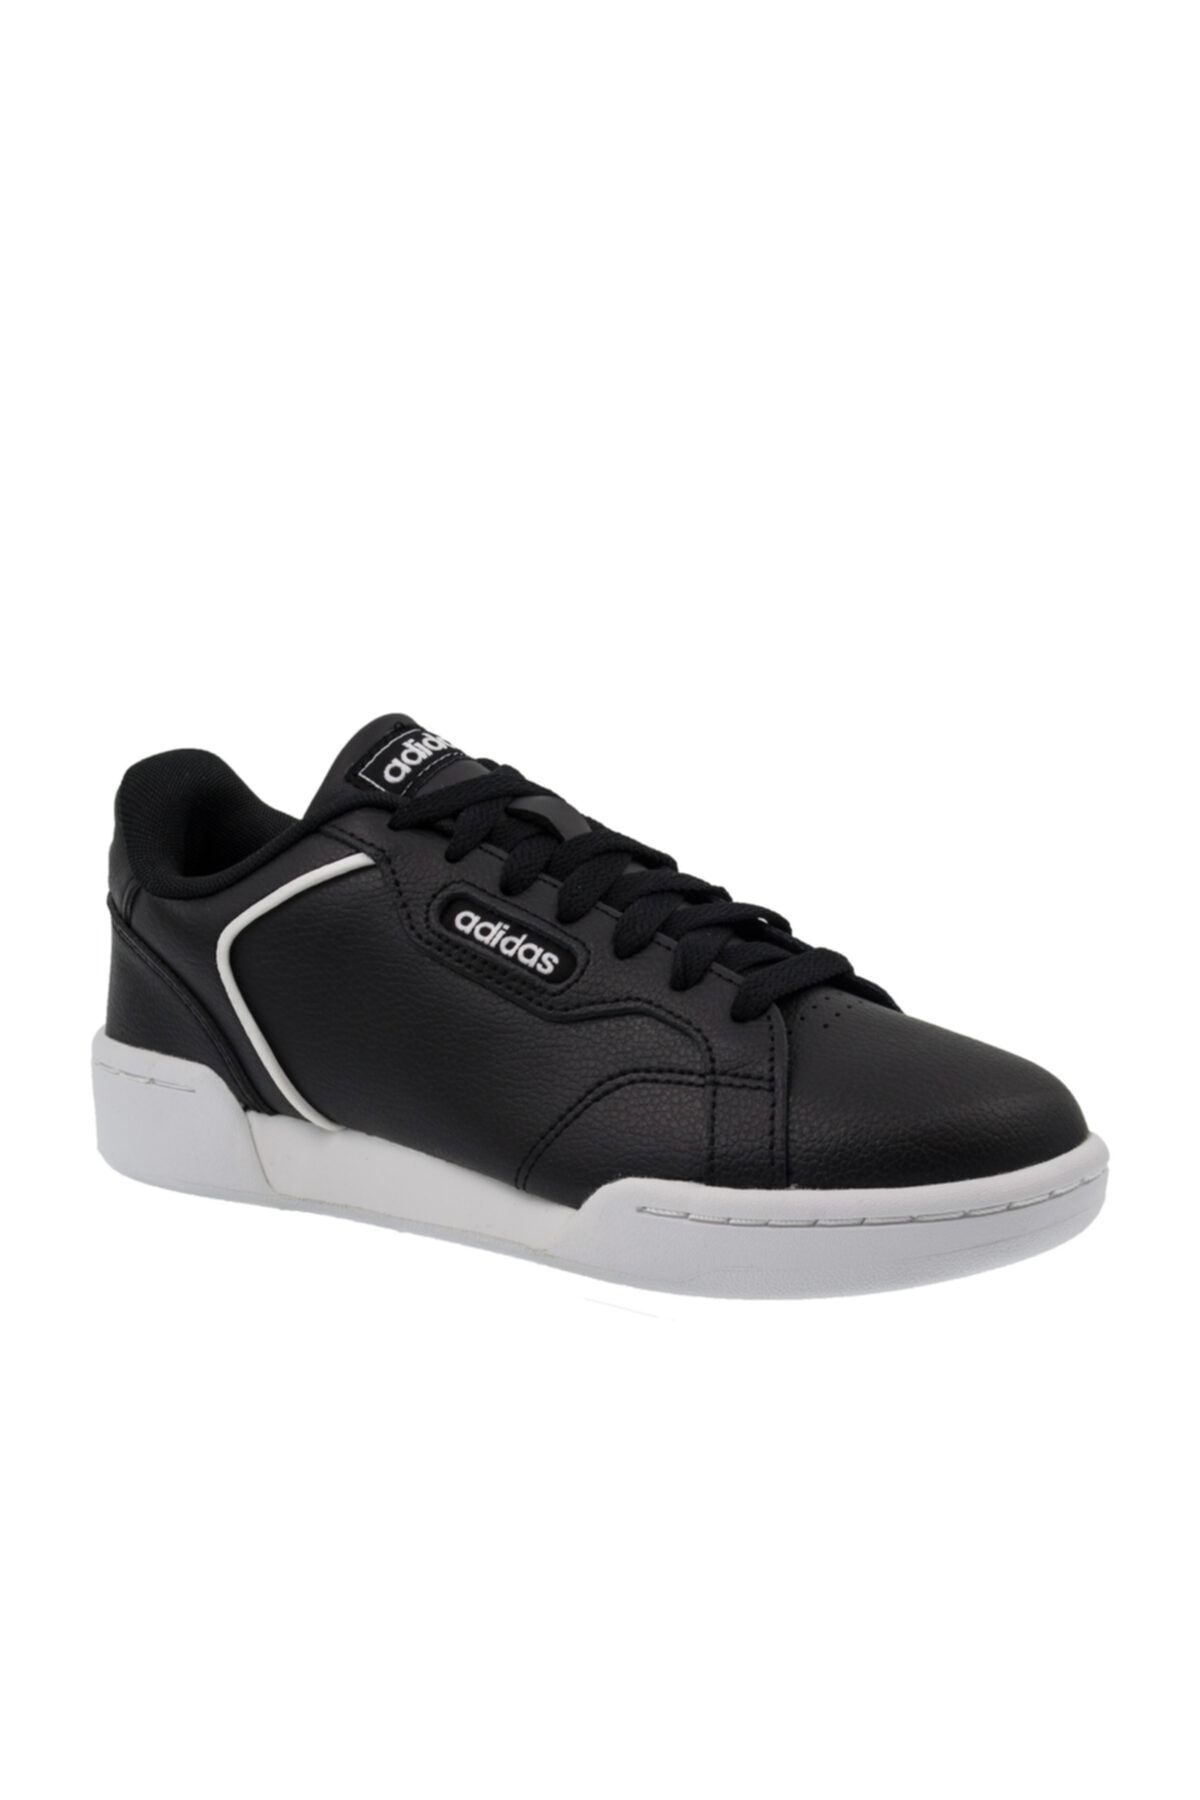 adidas ROGUERA Siyah Kadın Sneaker Ayakkabı 101069195